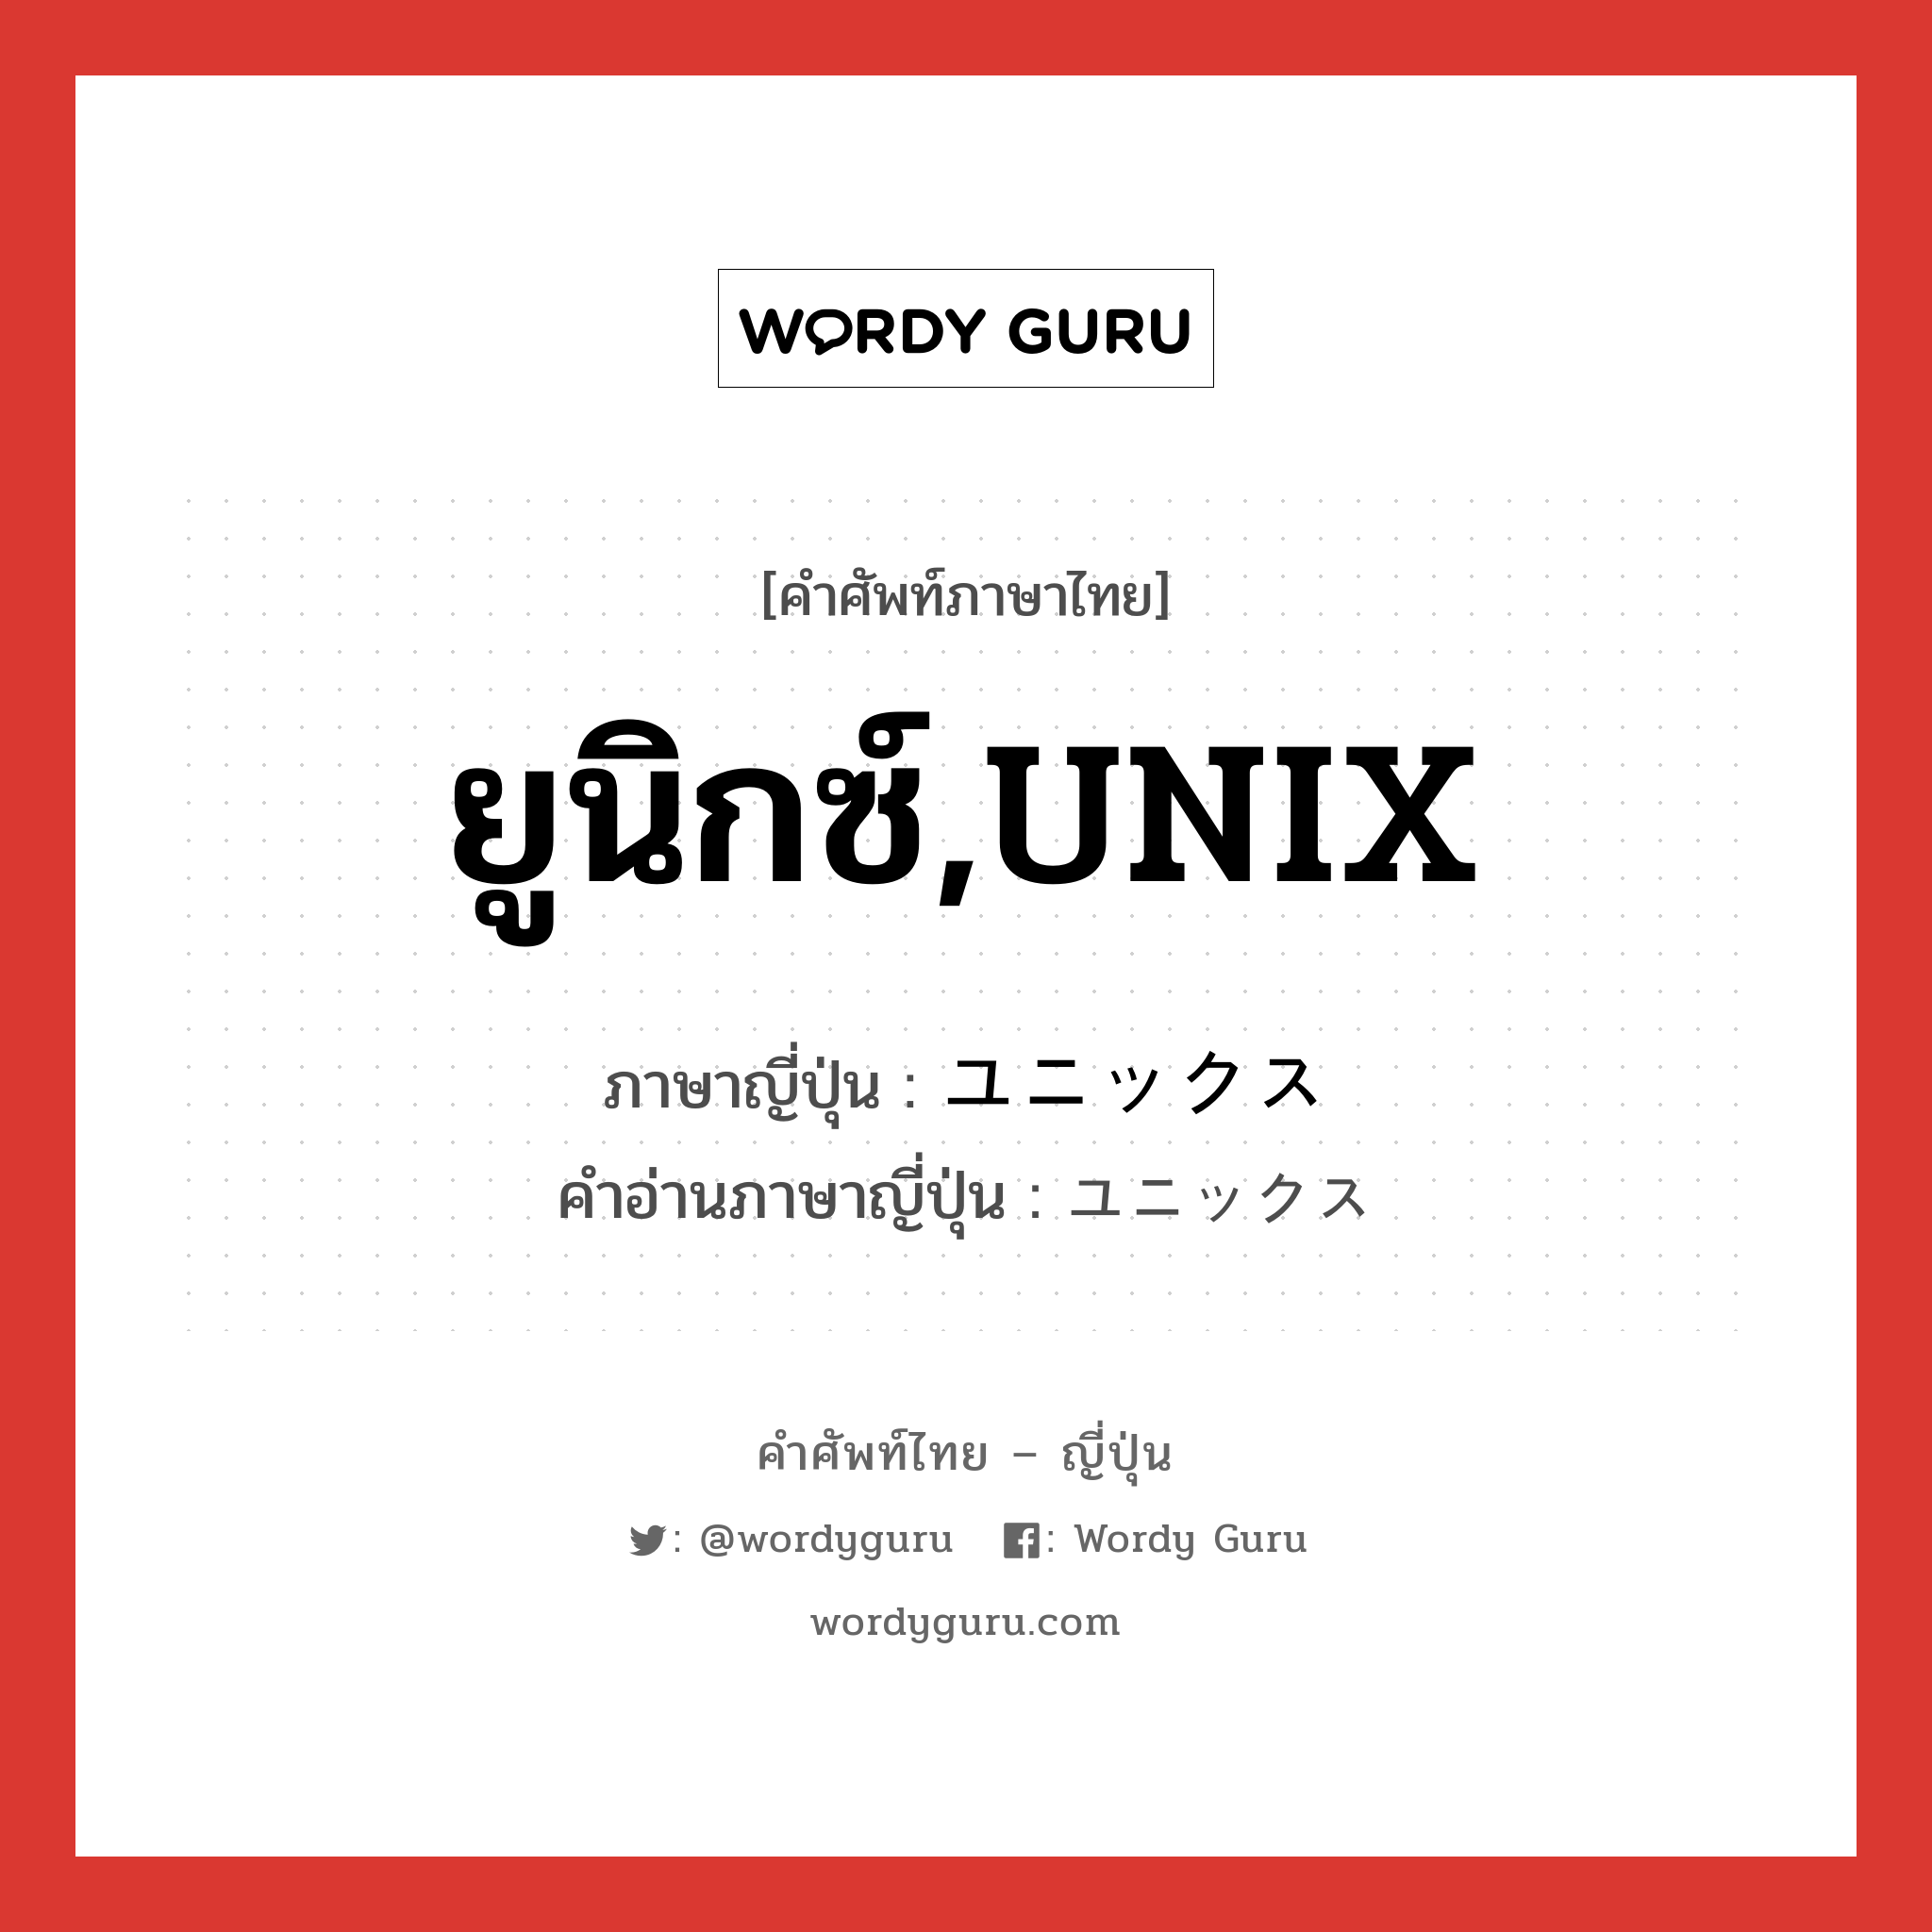 ยูนิกซ์,UNIX ภาษาญี่ปุ่นคืออะไร, คำศัพท์ภาษาไทย - ญี่ปุ่น ยูนิกซ์,UNIX ภาษาญี่ปุ่น ユニックス คำอ่านภาษาญี่ปุ่น ユニックス หมวด n หมวด n